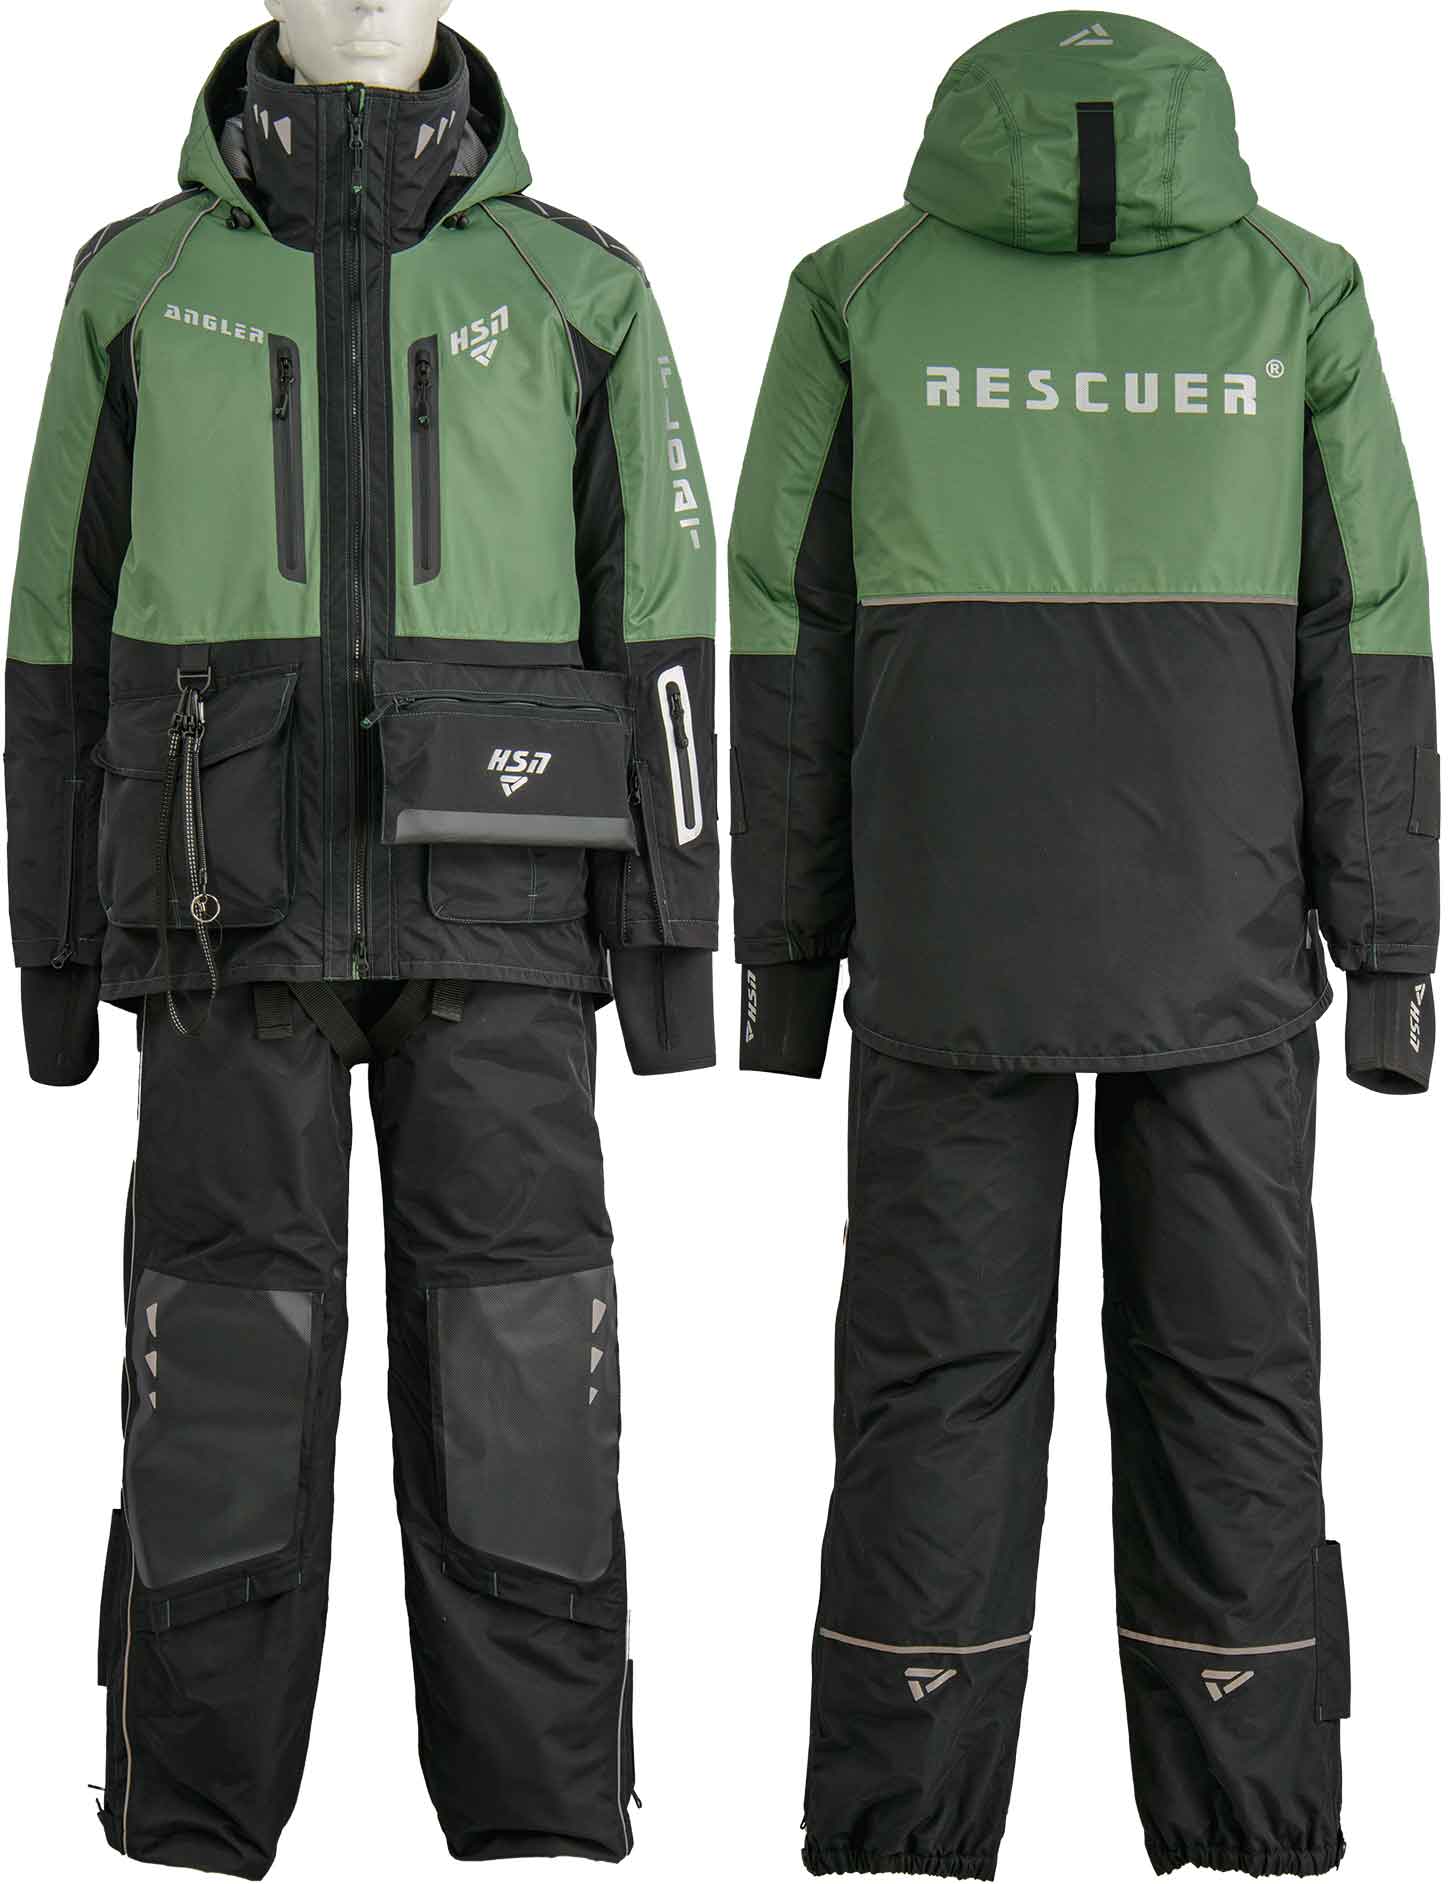 Зимний костюм-поплавок «Рескью 6 (Rescuer VI)» Зеленый – купить по ценепроизводителя с доставкой по России